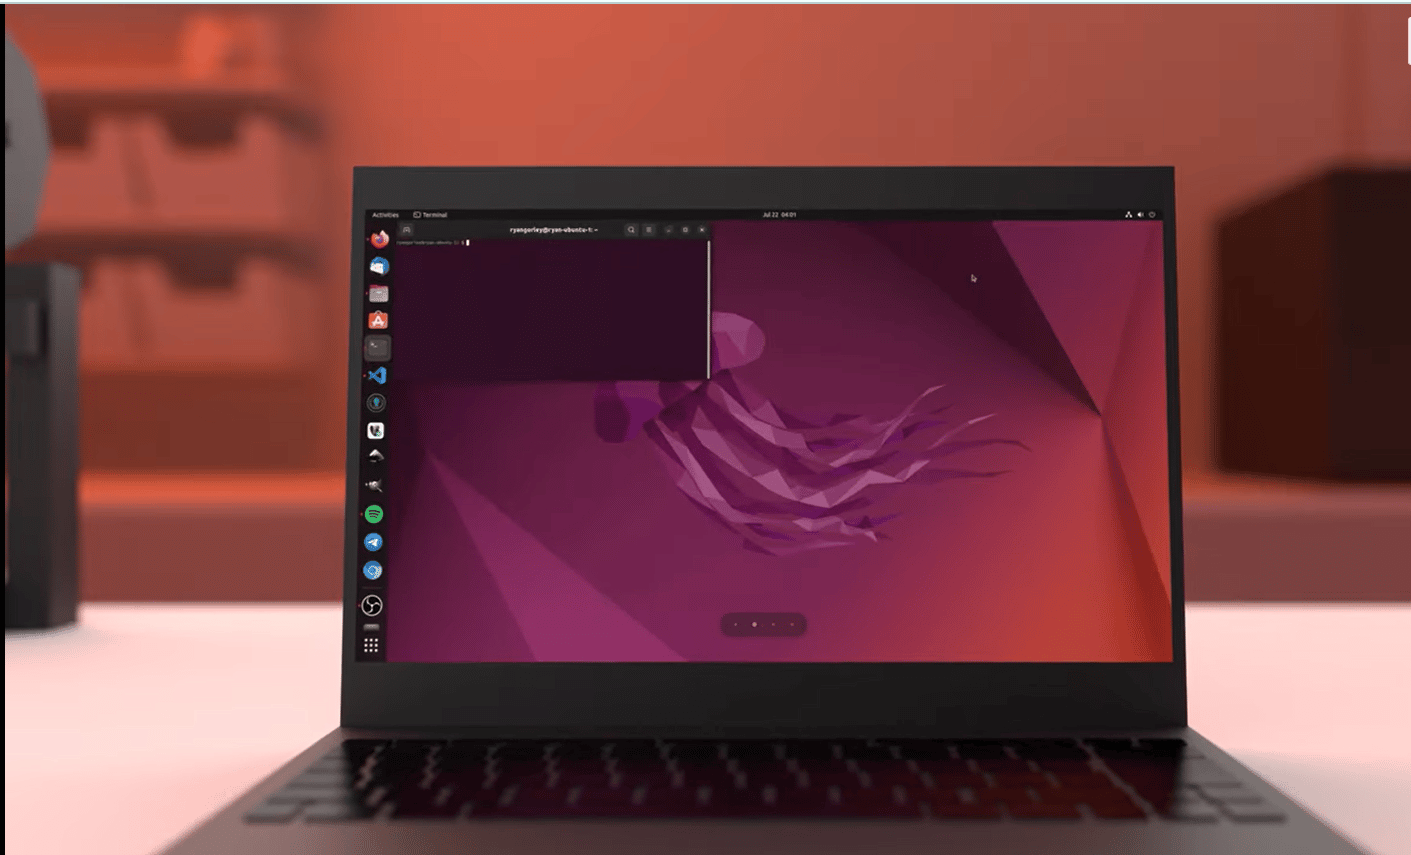 Vídeo promove lançamento de atualização do Ubuntu